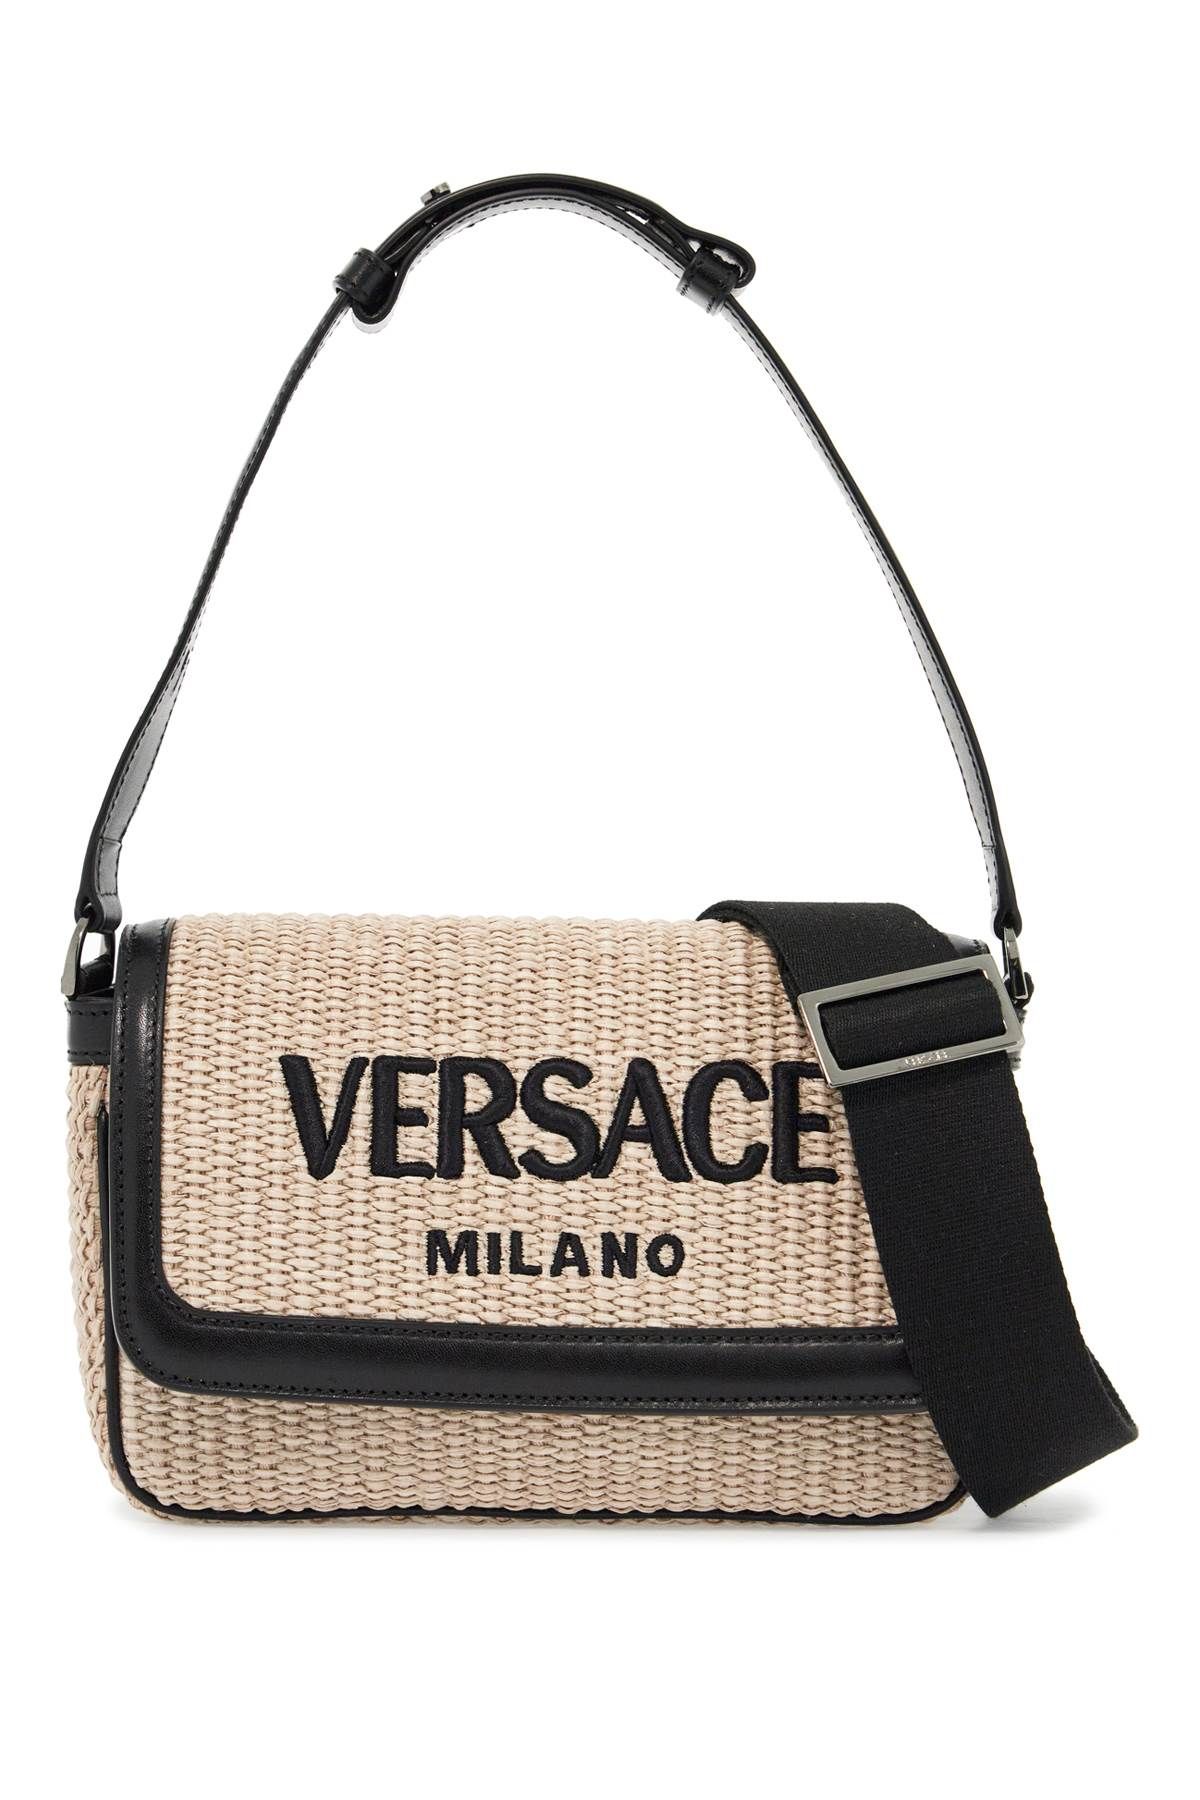 Versace VERSACE versace milano raffia bag